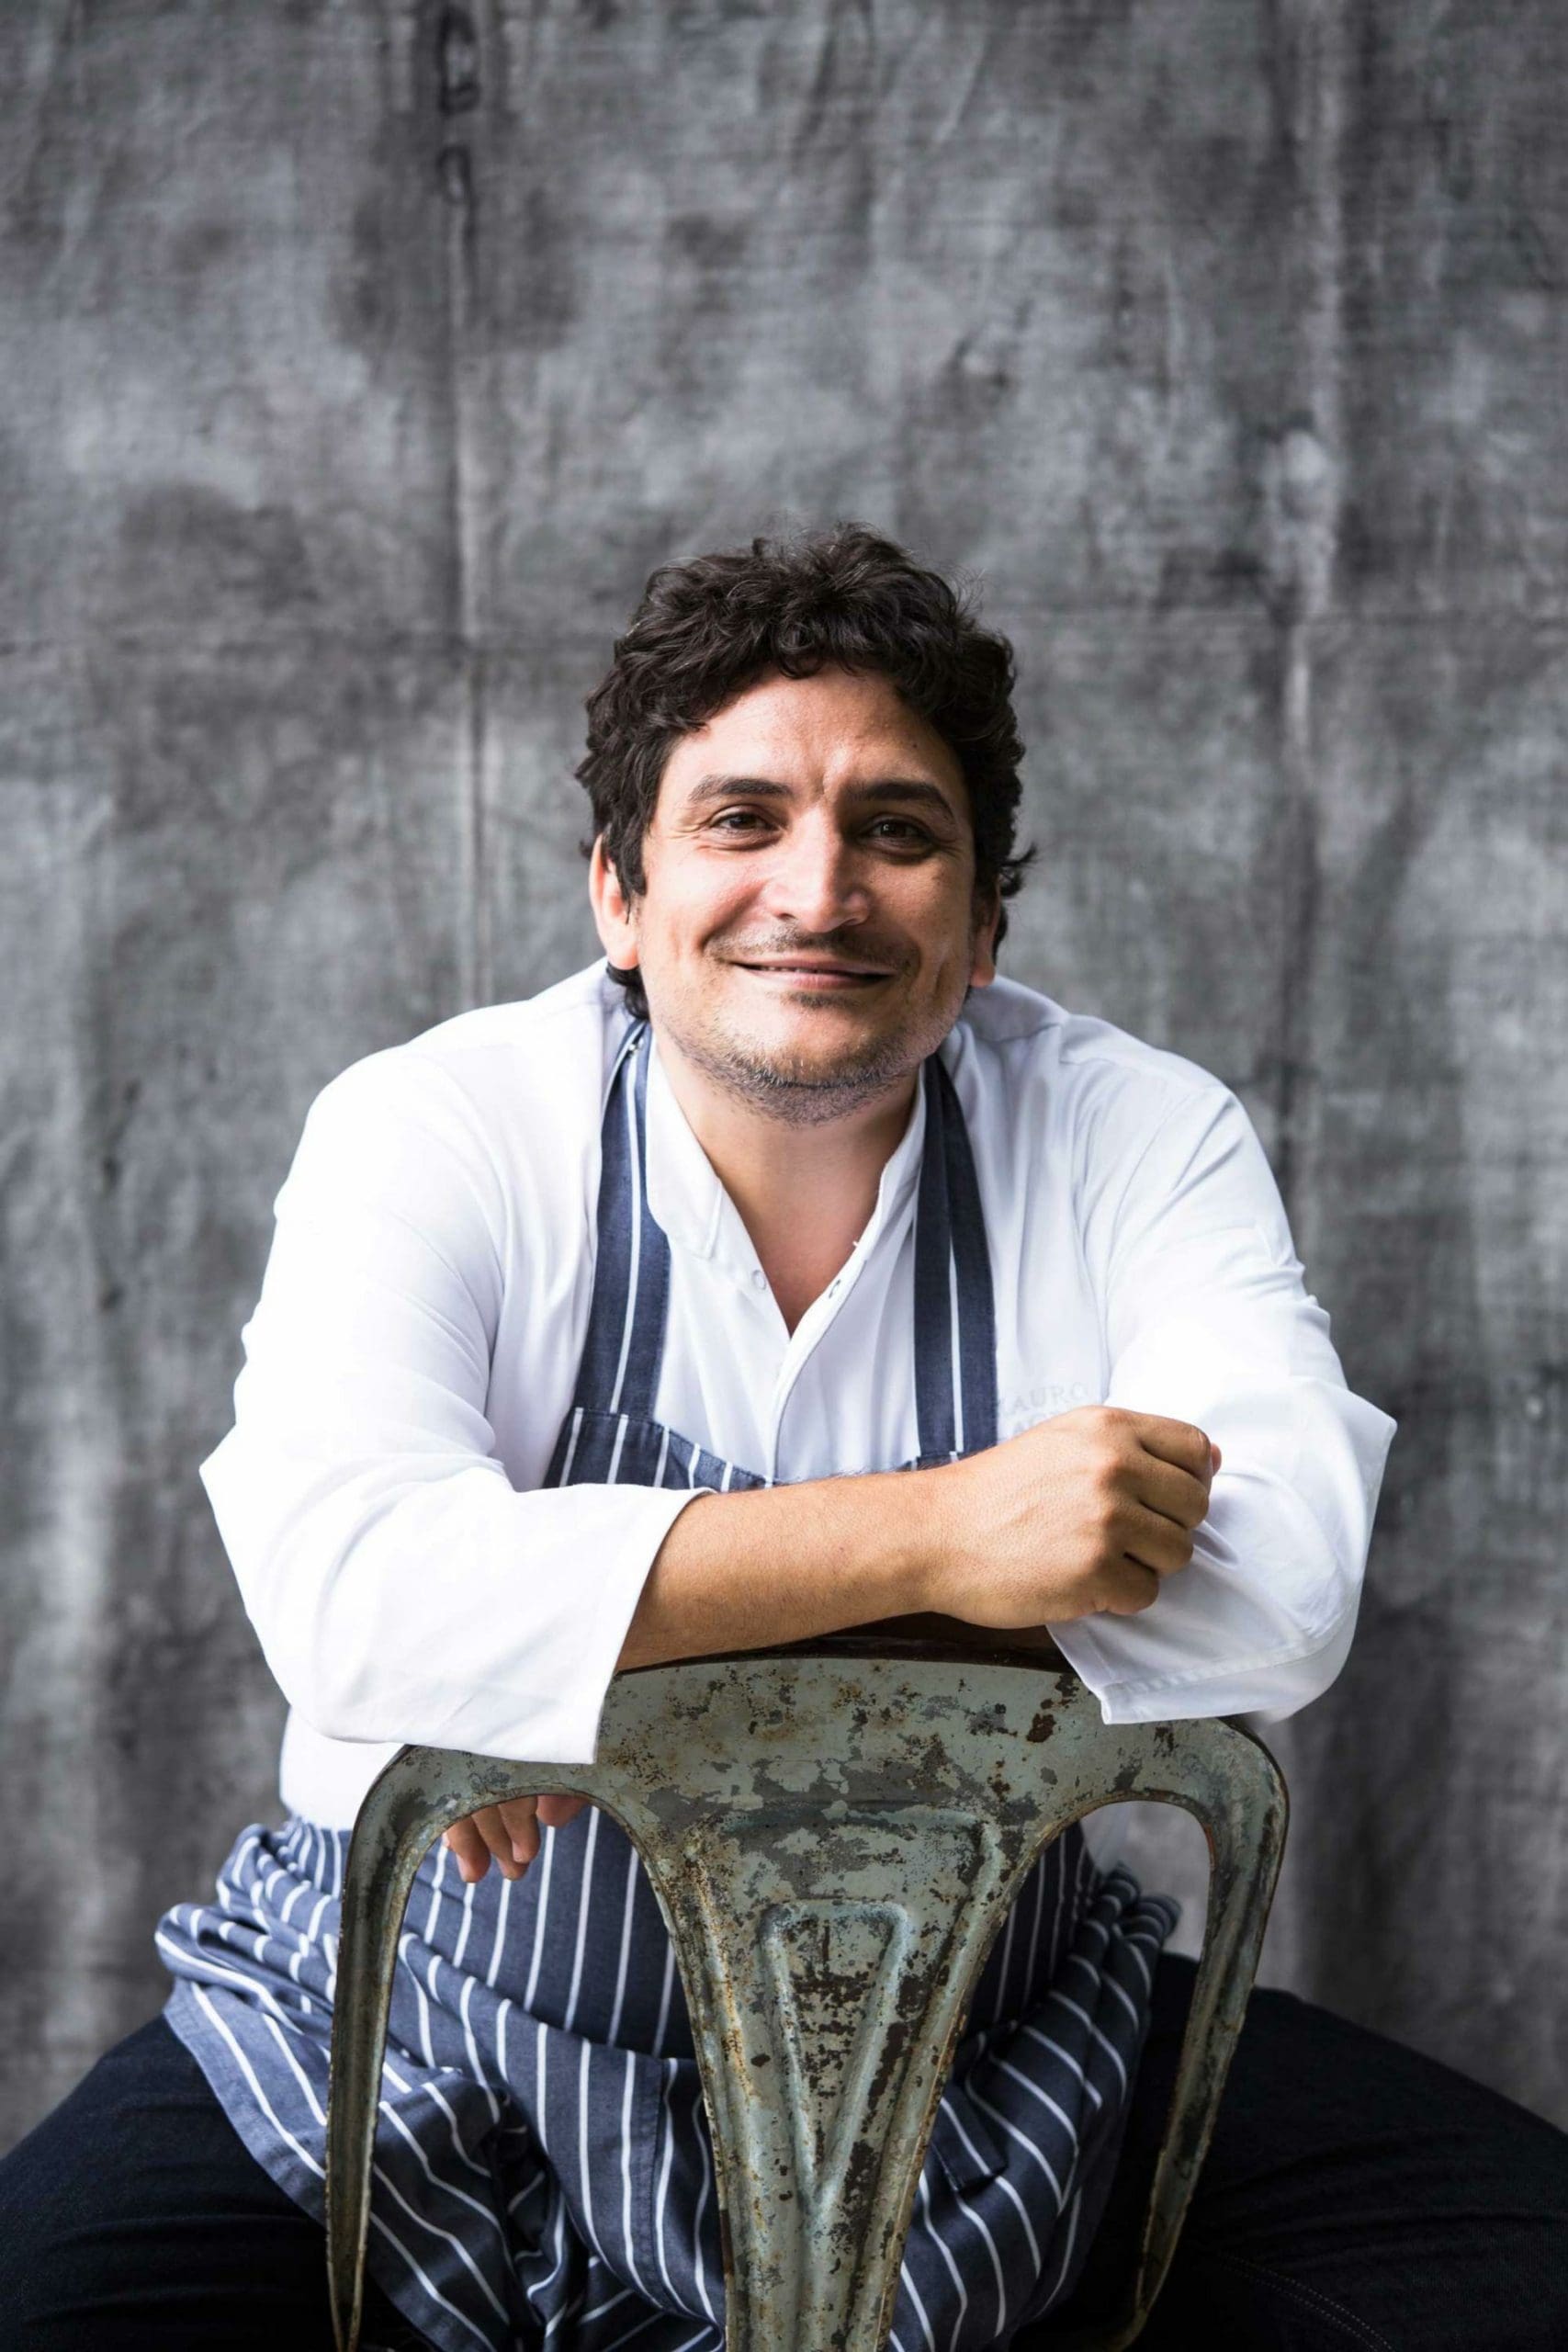 Mauro Colagreco, head chef at Mirazur